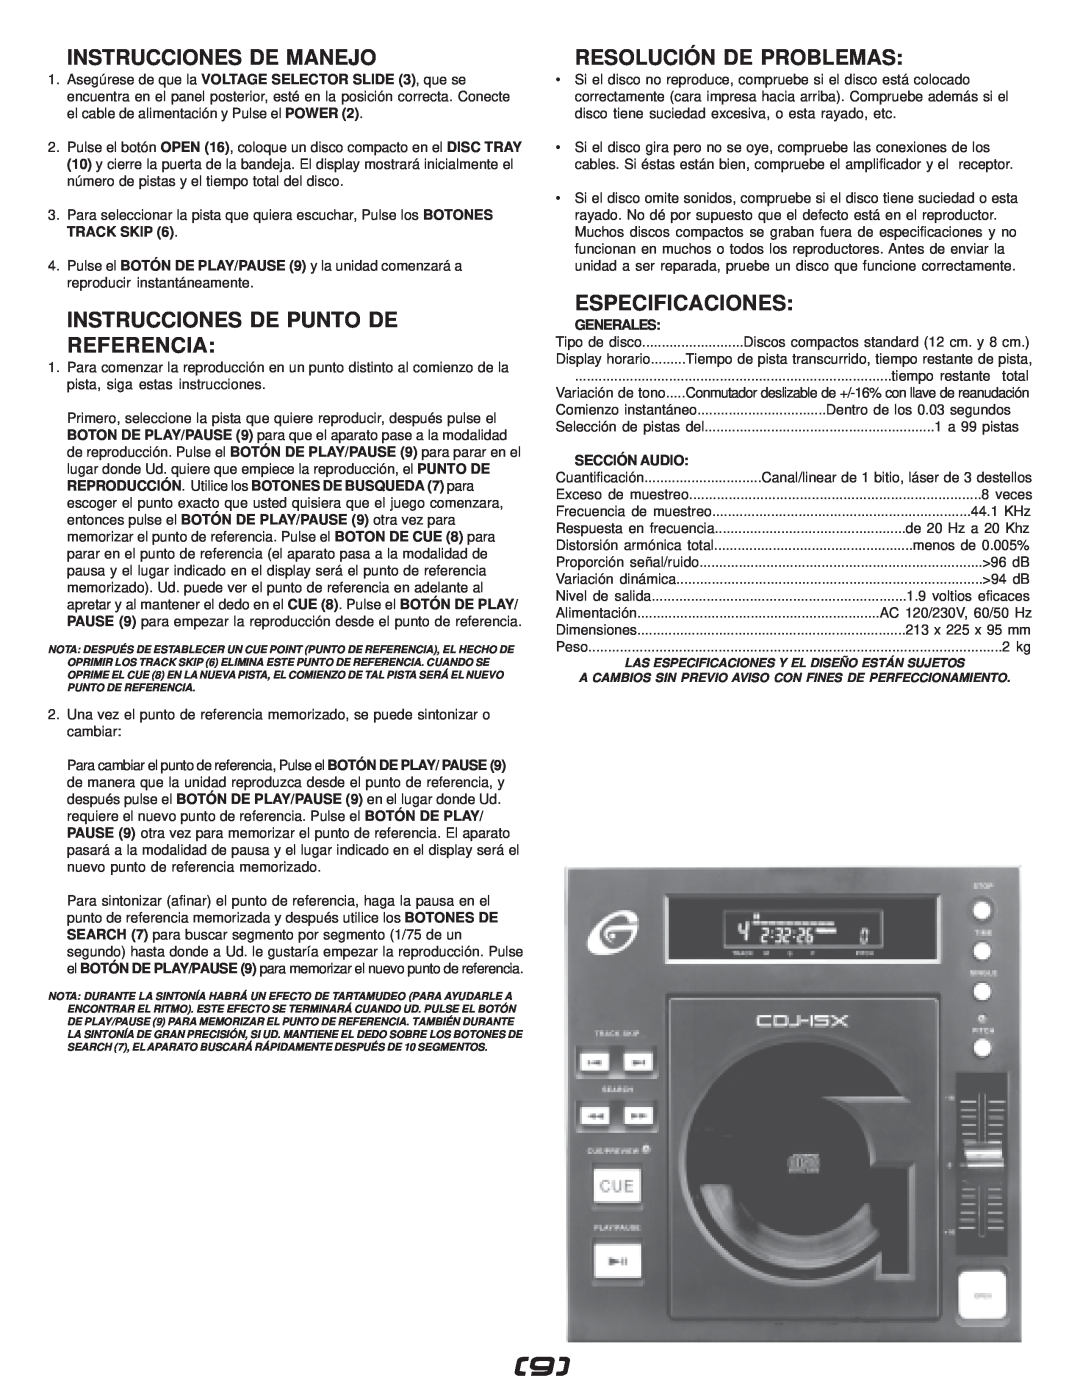 Gemini CDJ-15X Instrucciones De Manejo, Instrucciones De Punto De Referencia, Resolución De Problemas, Especificaciones 